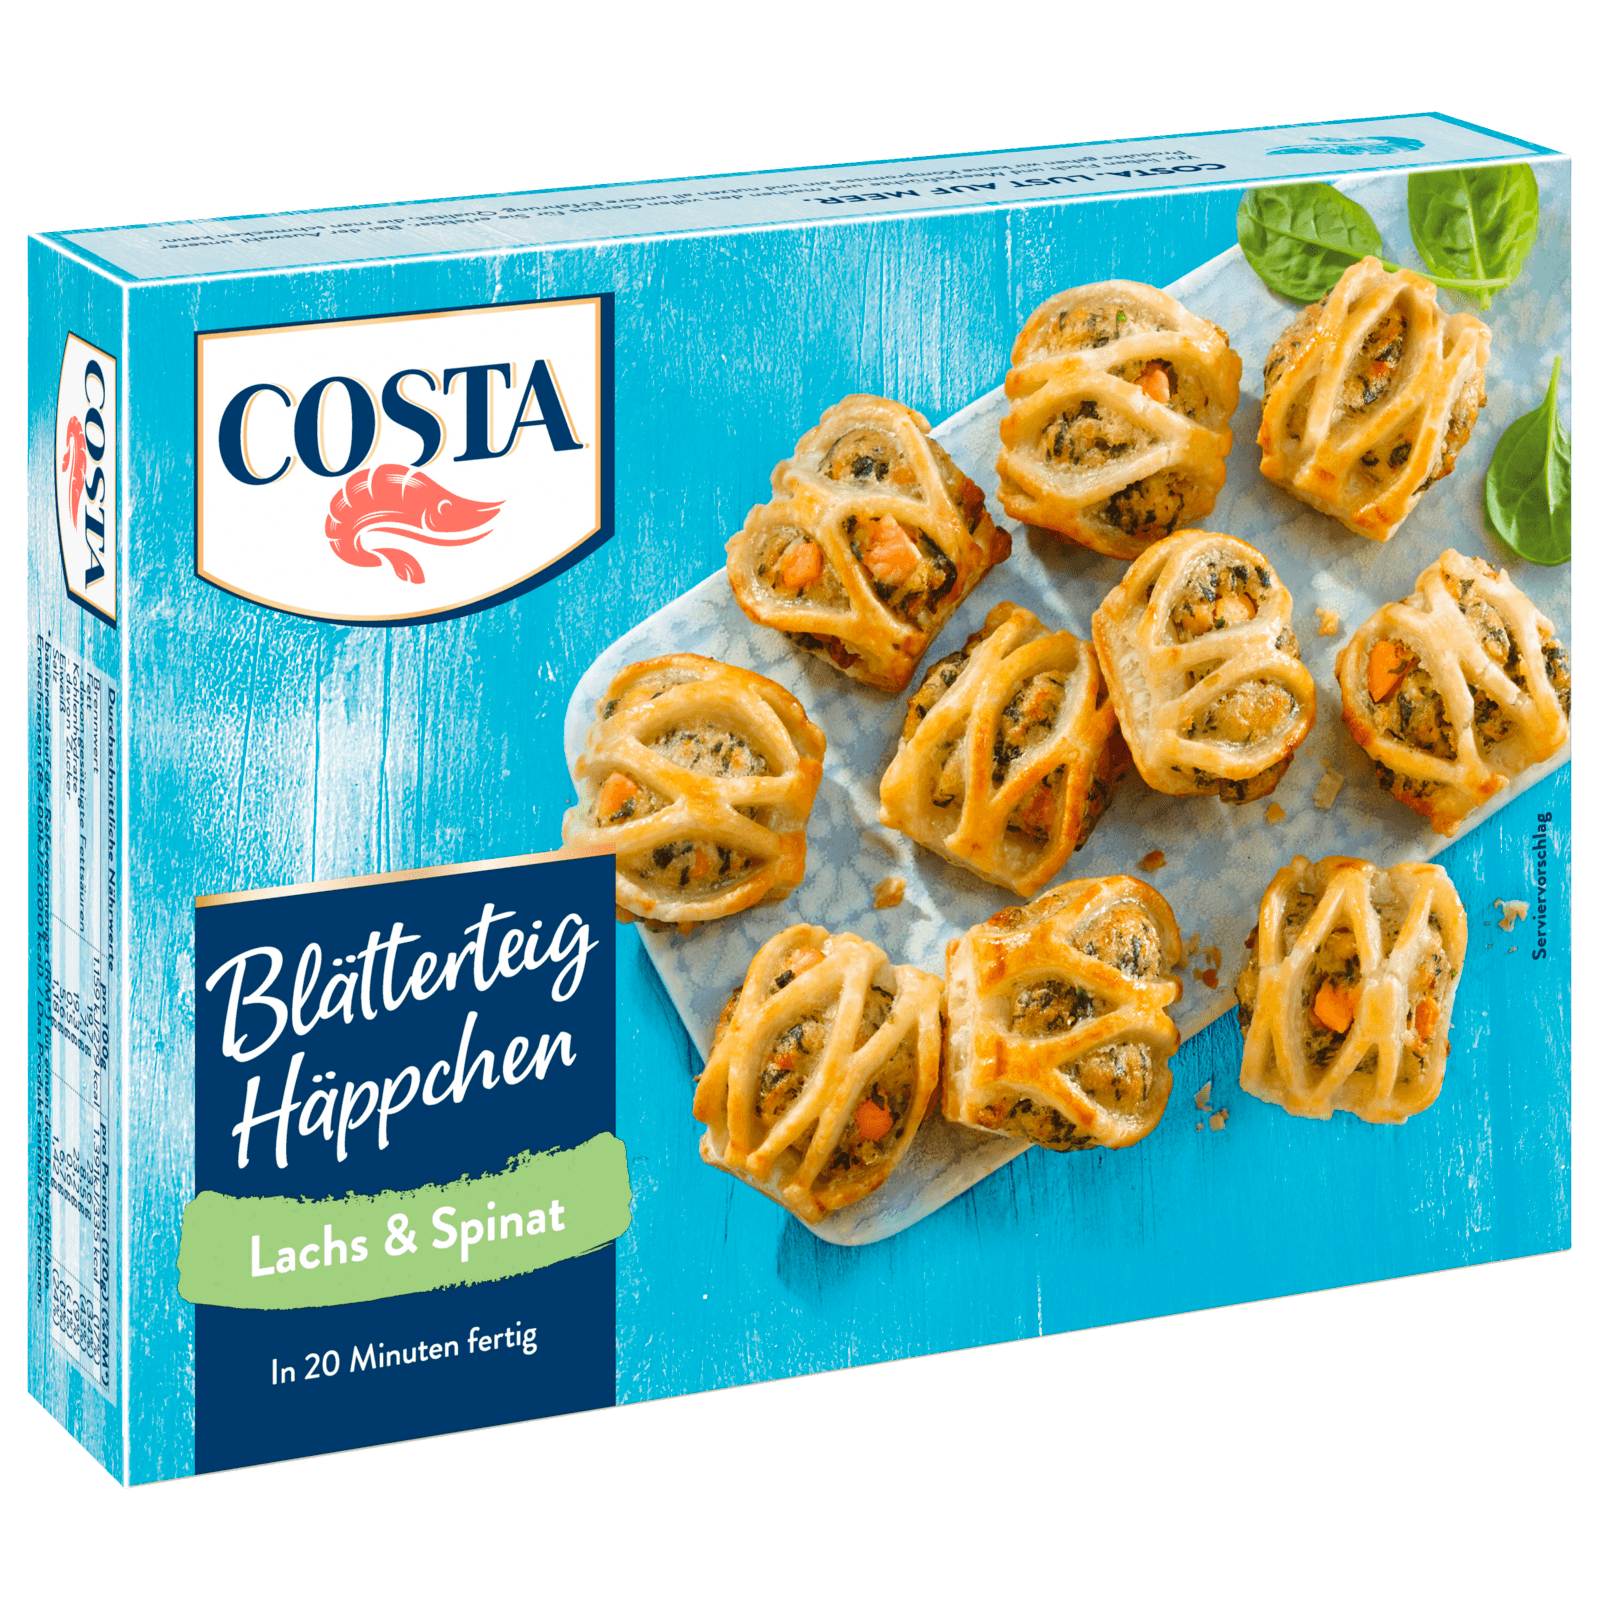 Costa Blätterteig Häppchen Lachs & Spinat 240g bei REWE online bestellen!